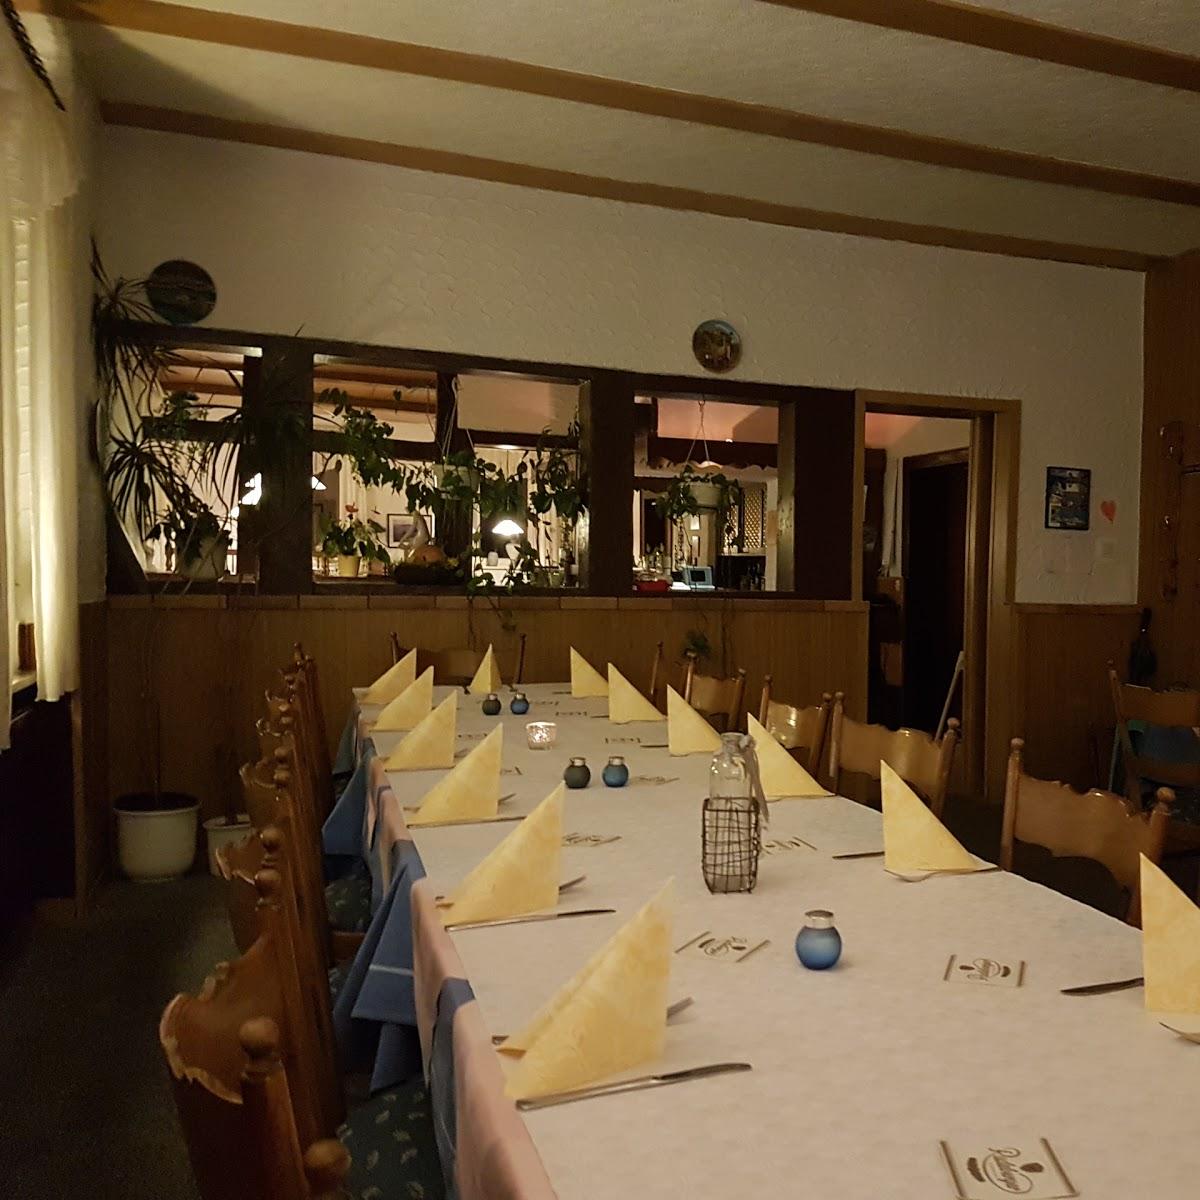 Restaurant "Gaststätte Akropolis" in Grebenstein